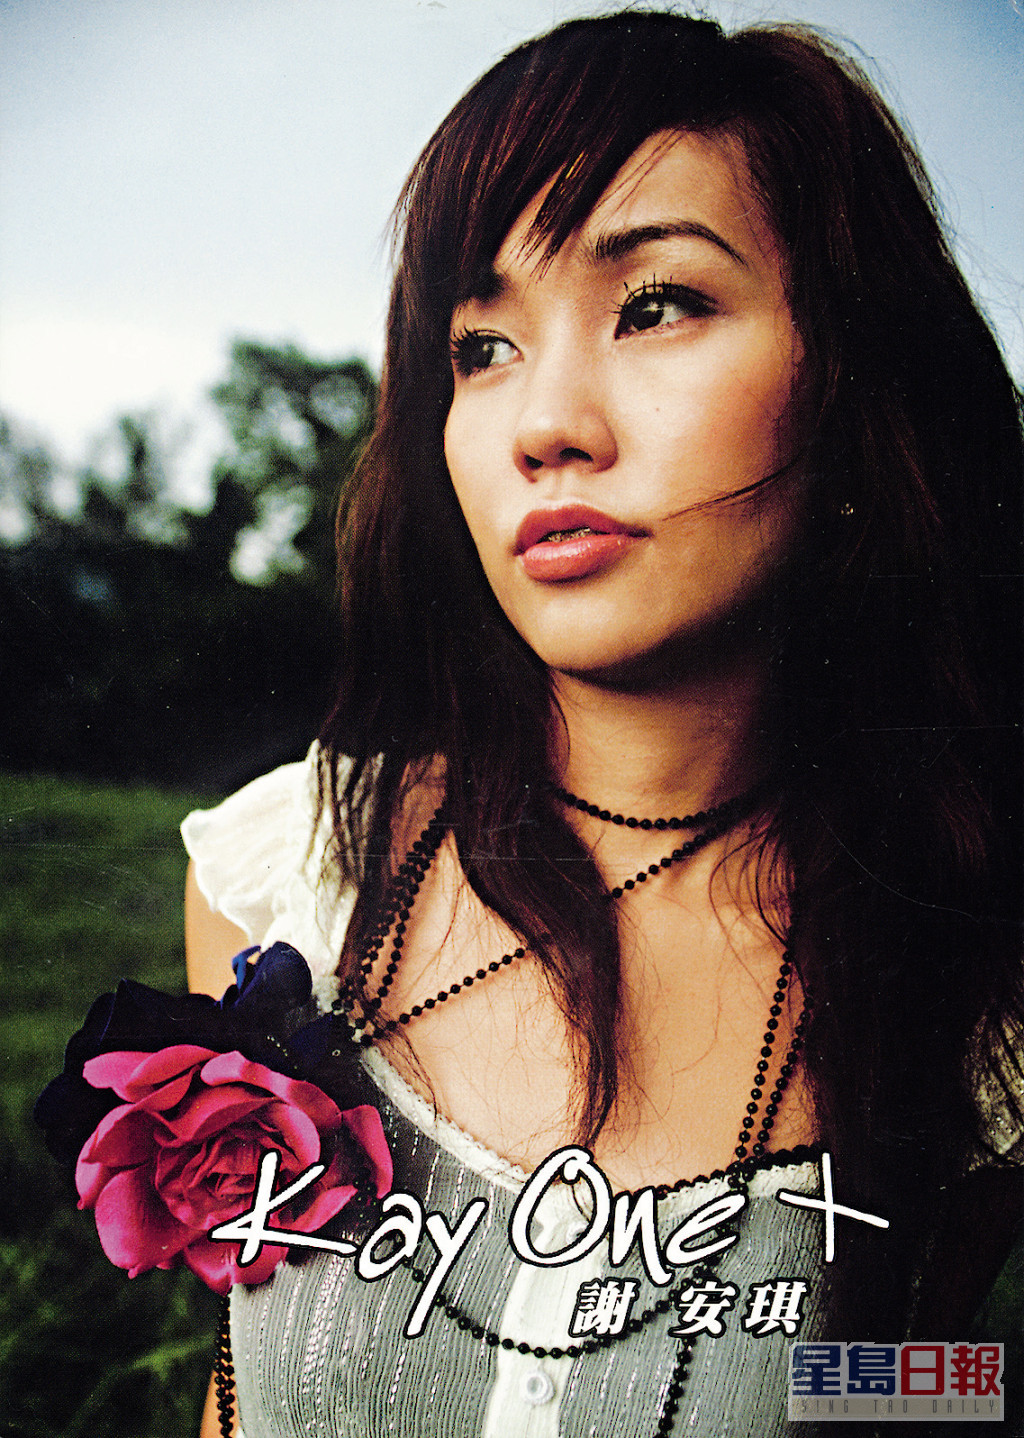 谢安琪2005年推出收张大碟《Kay One》出道。